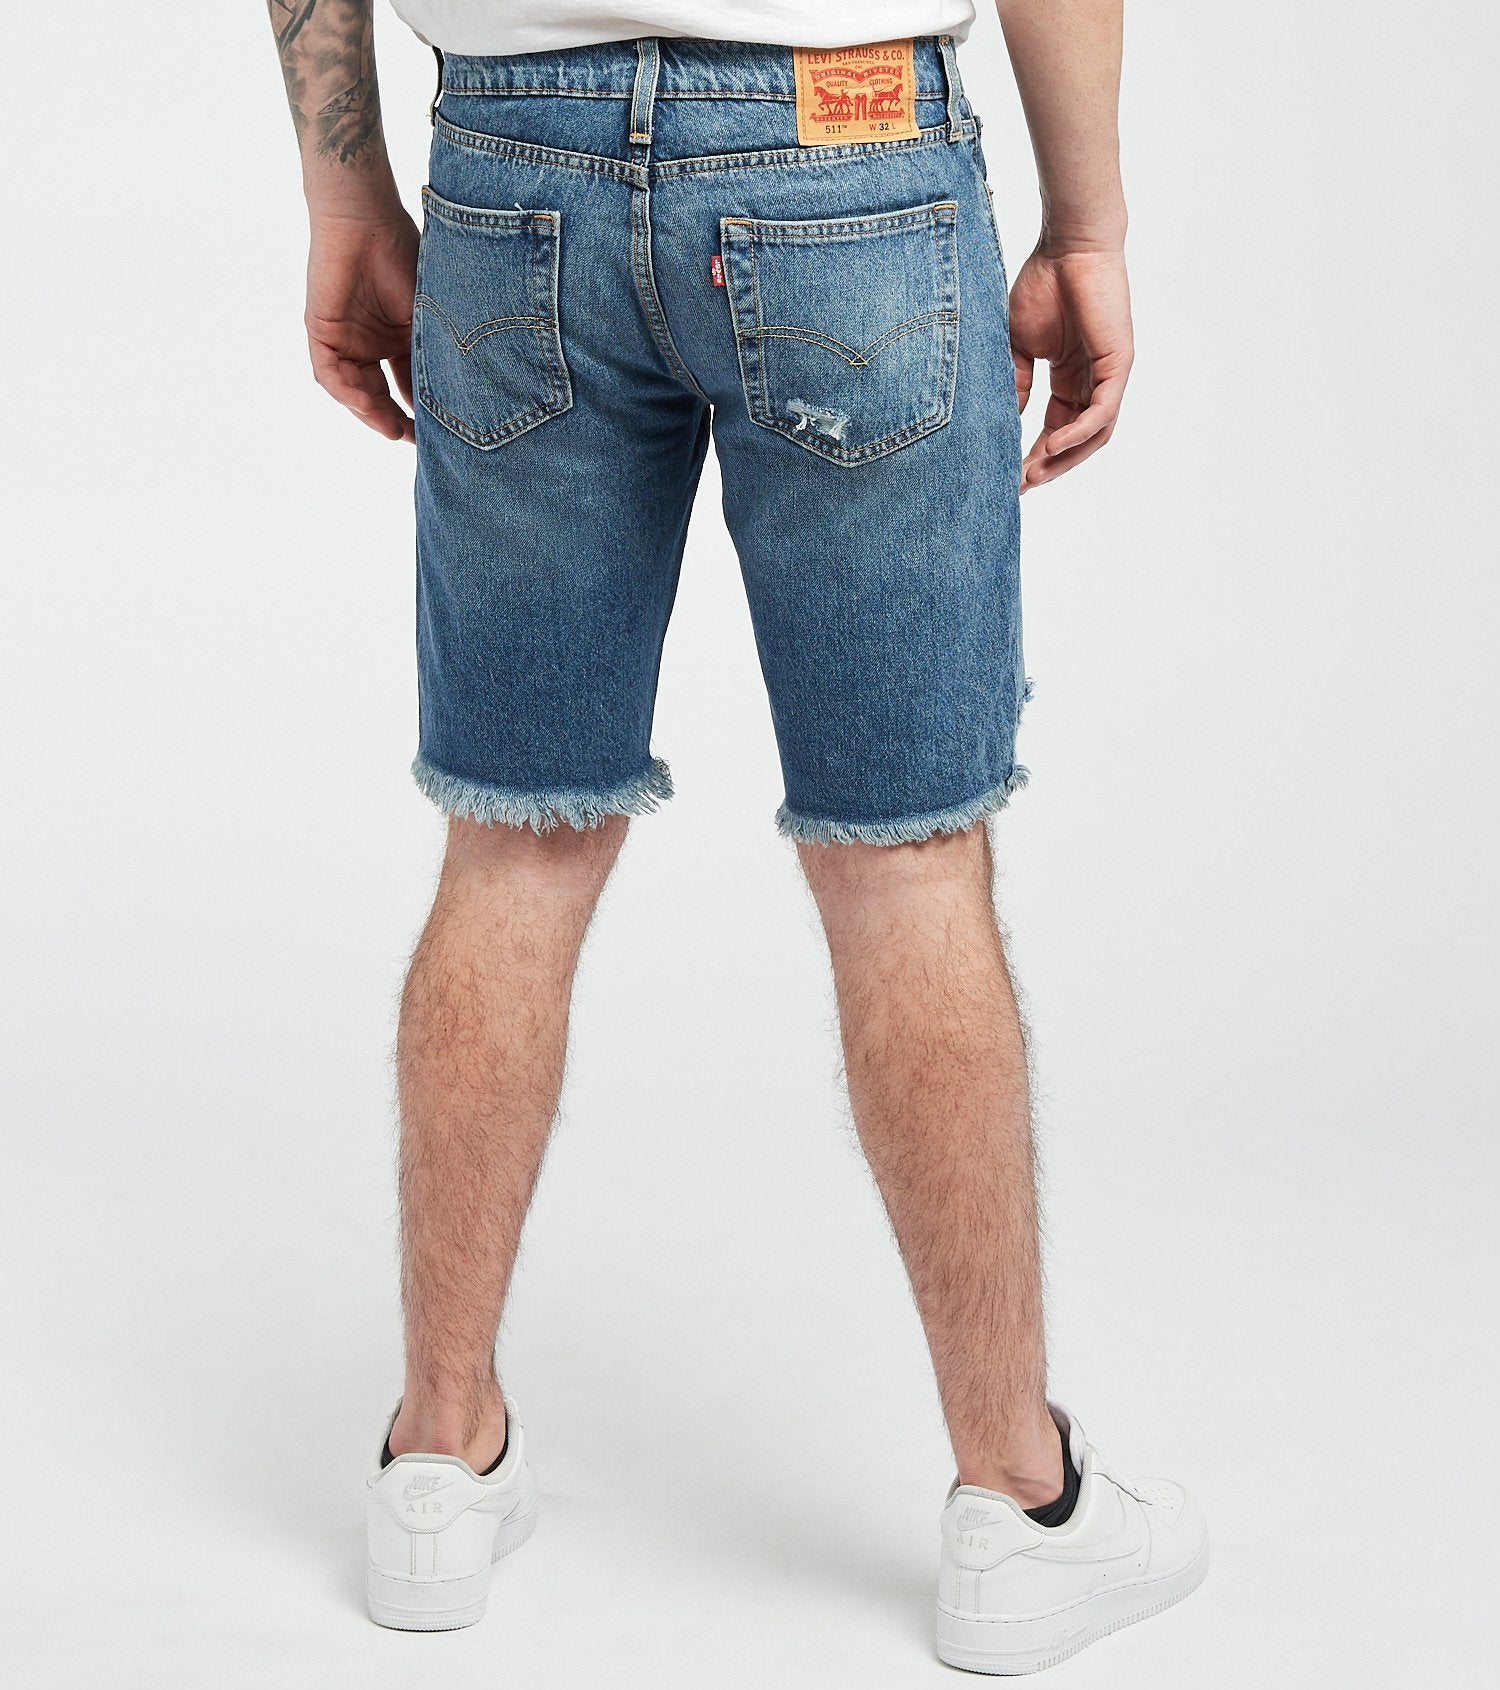 Men's Jeans Shorts